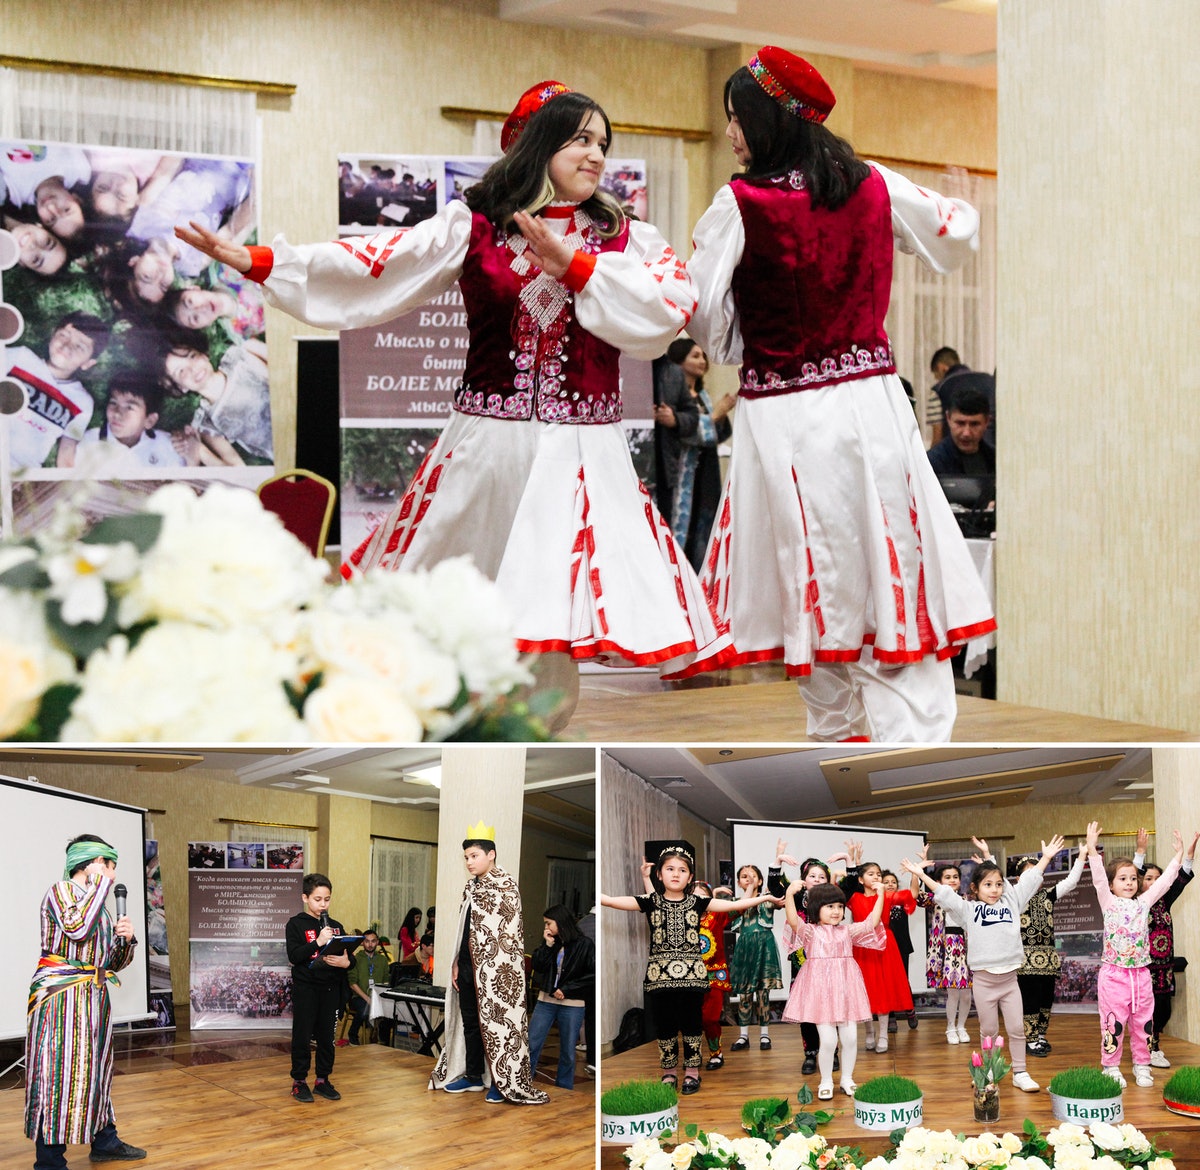 Lors de cette conférence à Khujand, au Tadjikistan, des danses traditionnelles et des représentations théâtrales ont contribué à l’atmosphère joyeuse du rassemblement.